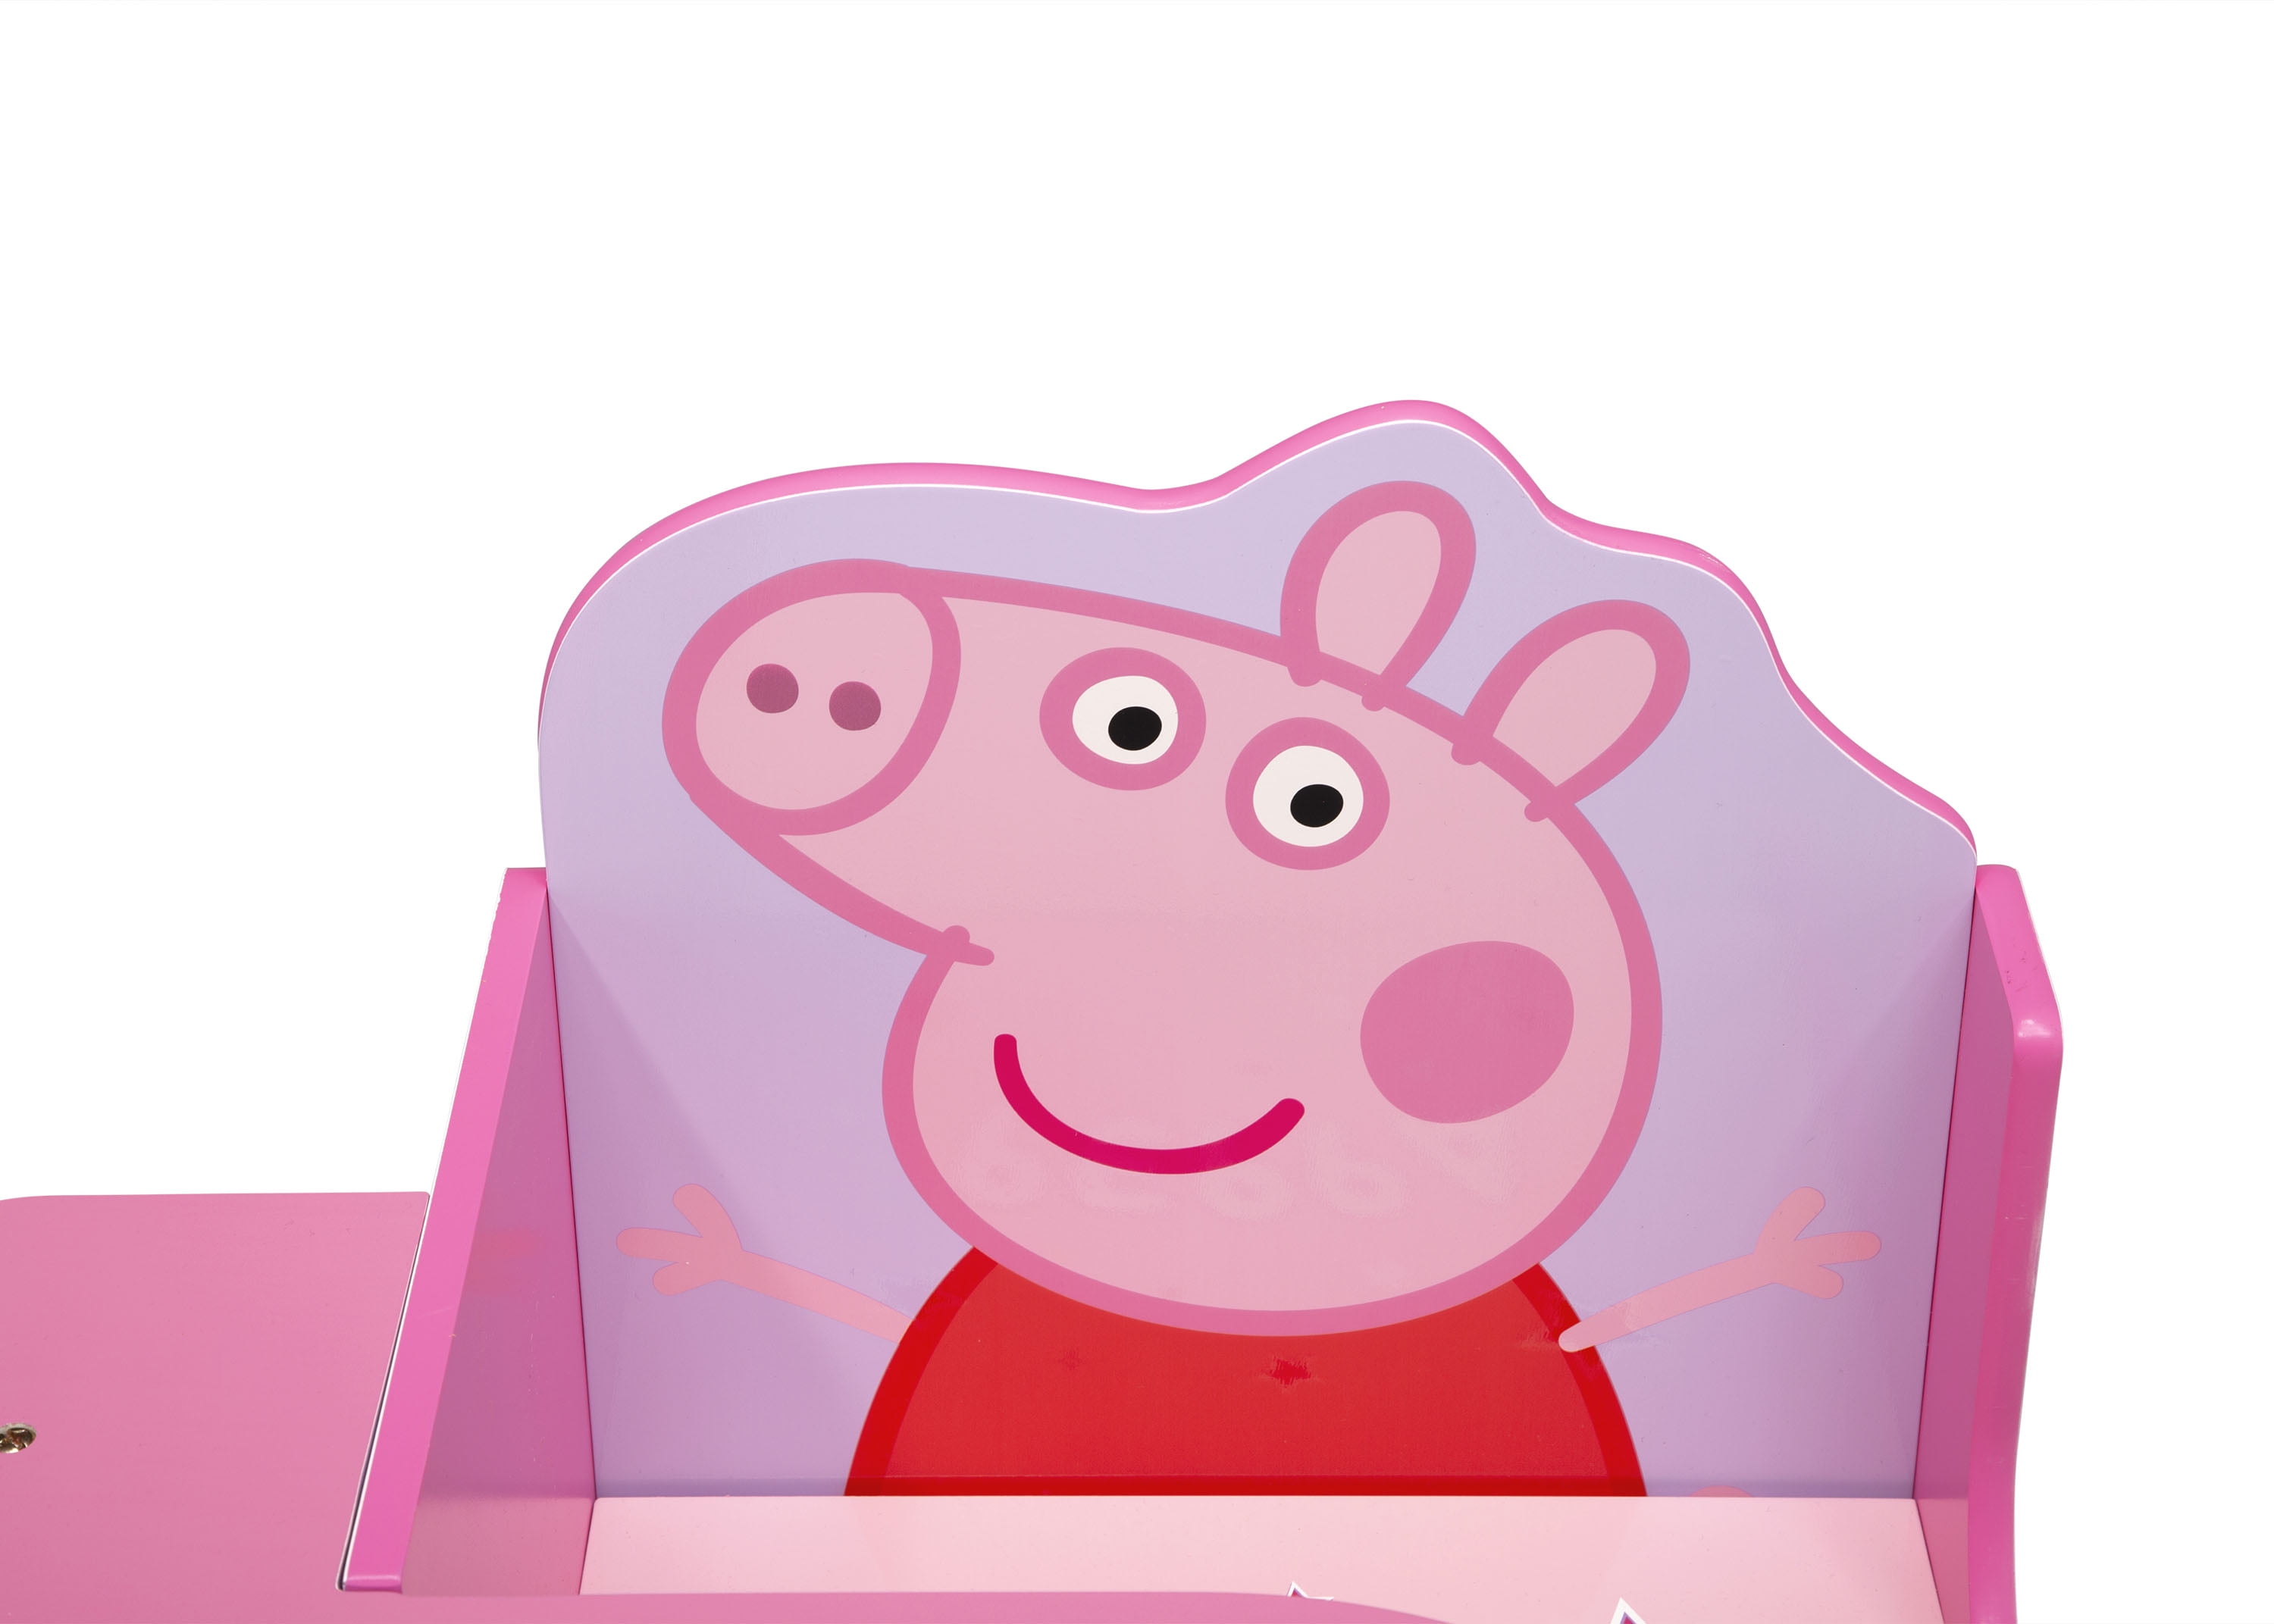 Peppa Pig Kids' Chair Desk With Storage Bin - Delta Children : Target